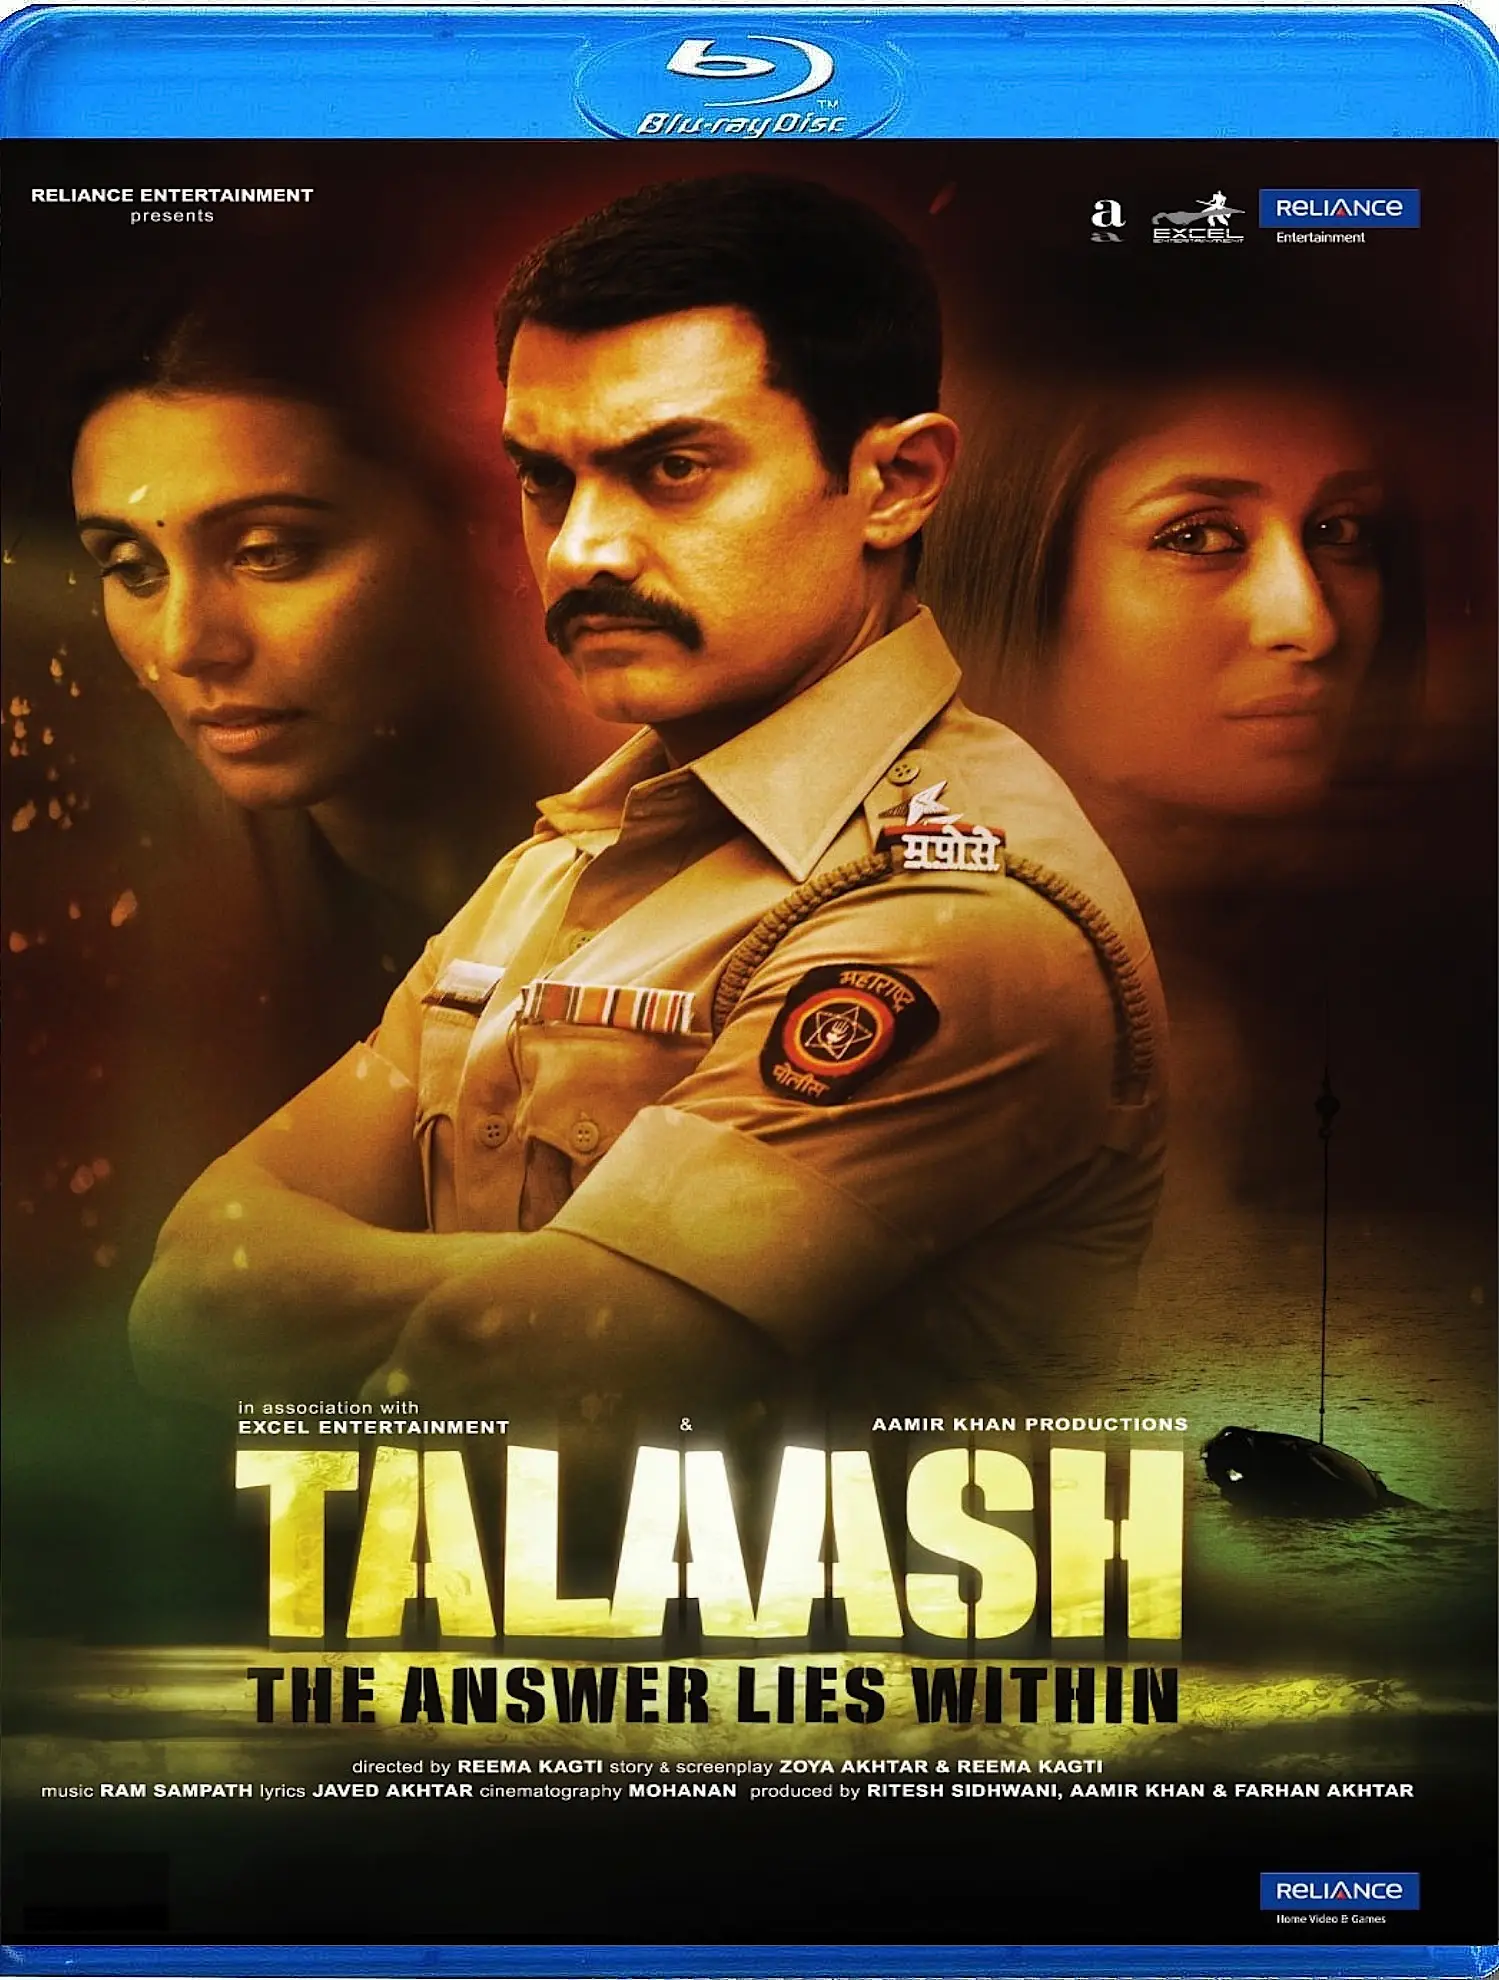 talaash movie full 2012